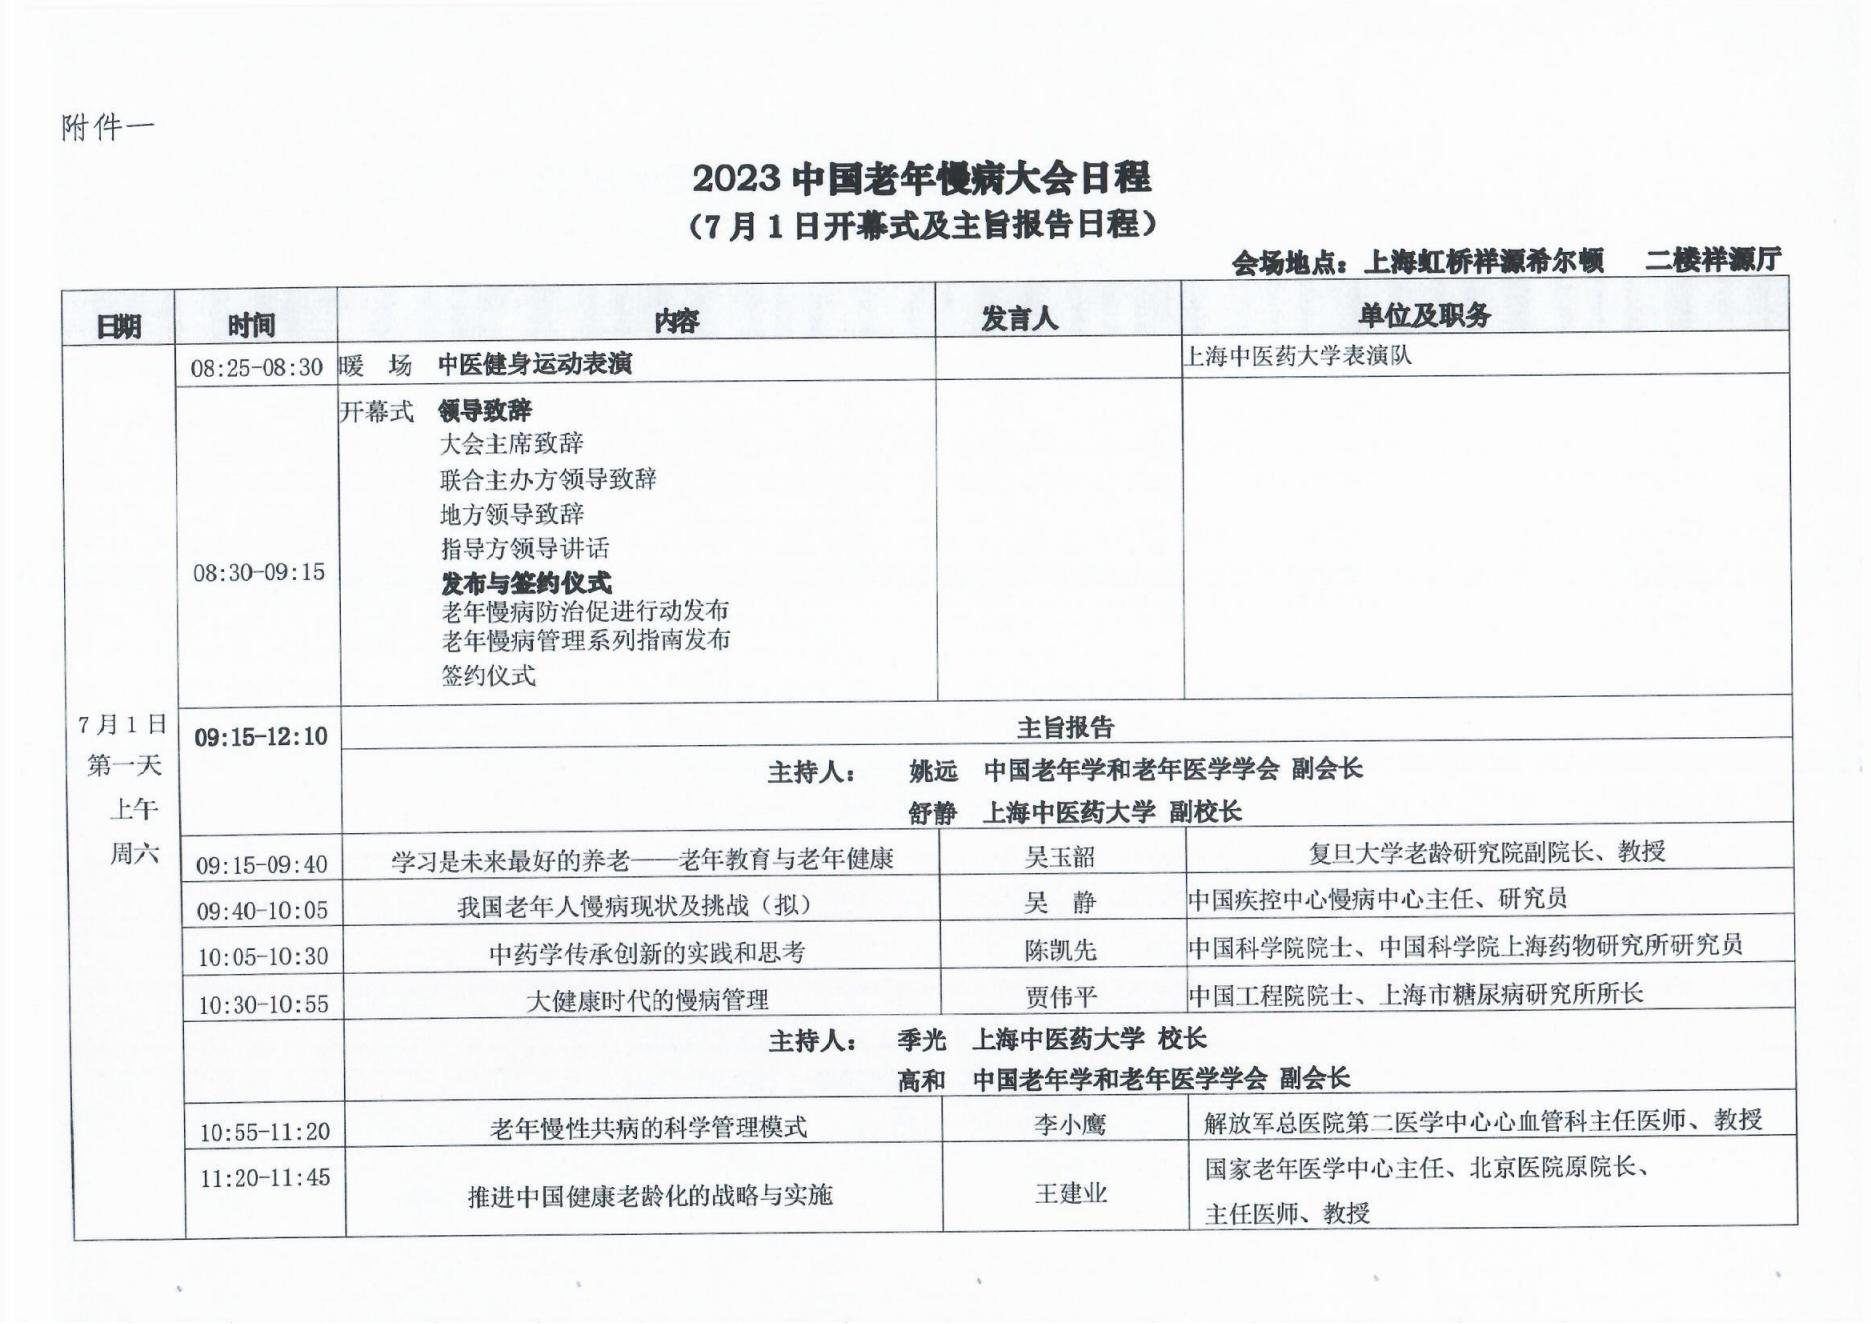 2023中国老年慢病大会会议通知（第二轮）0606(1)_04.jpg